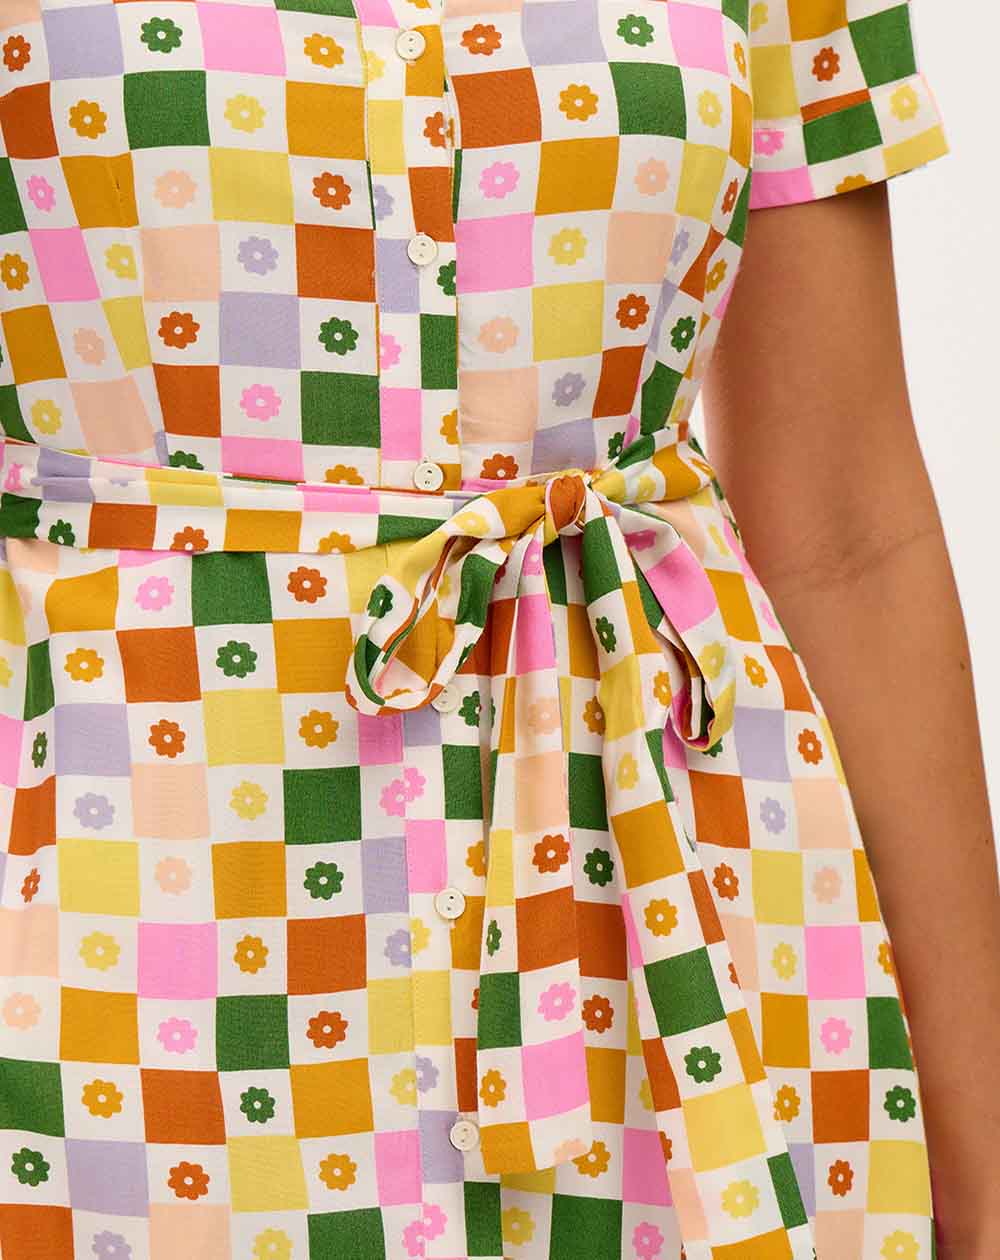 Sugarhill Lauretta Midi Shirt Dress in Multi, Floral Checkerboard